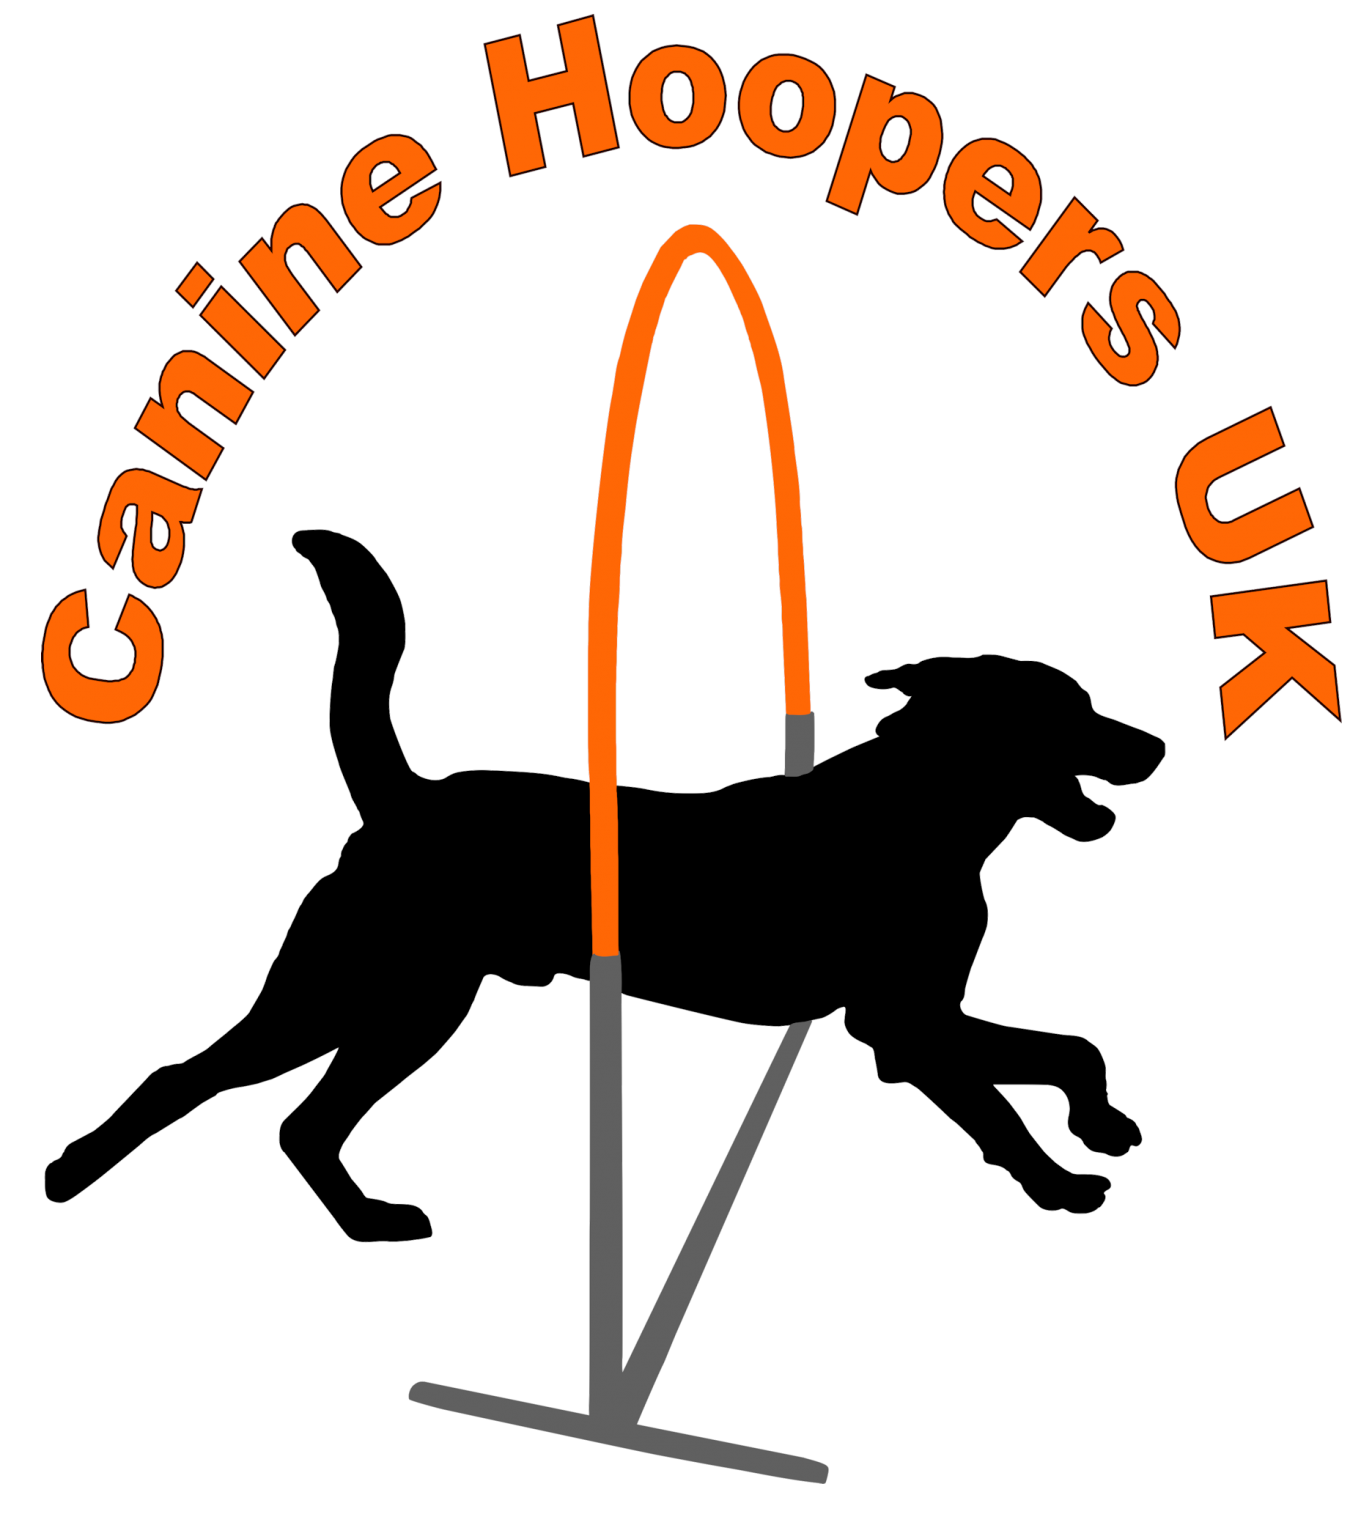 Canine Hoopers UK logo